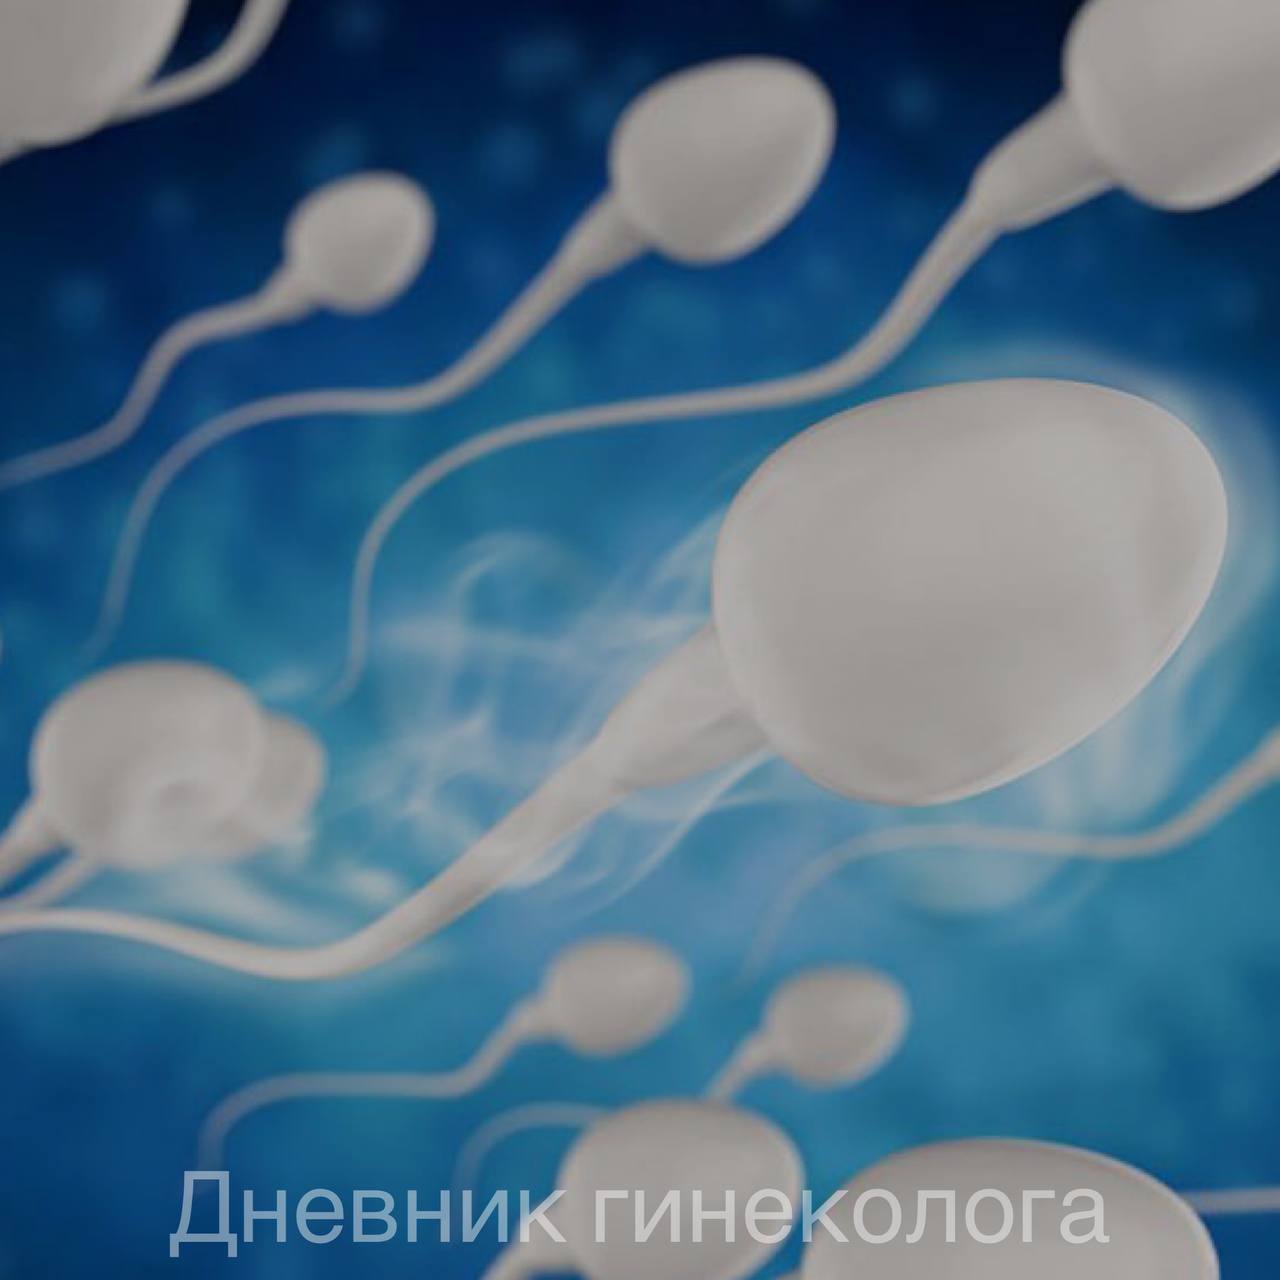 энтерококк в сперме мужчины фото 51